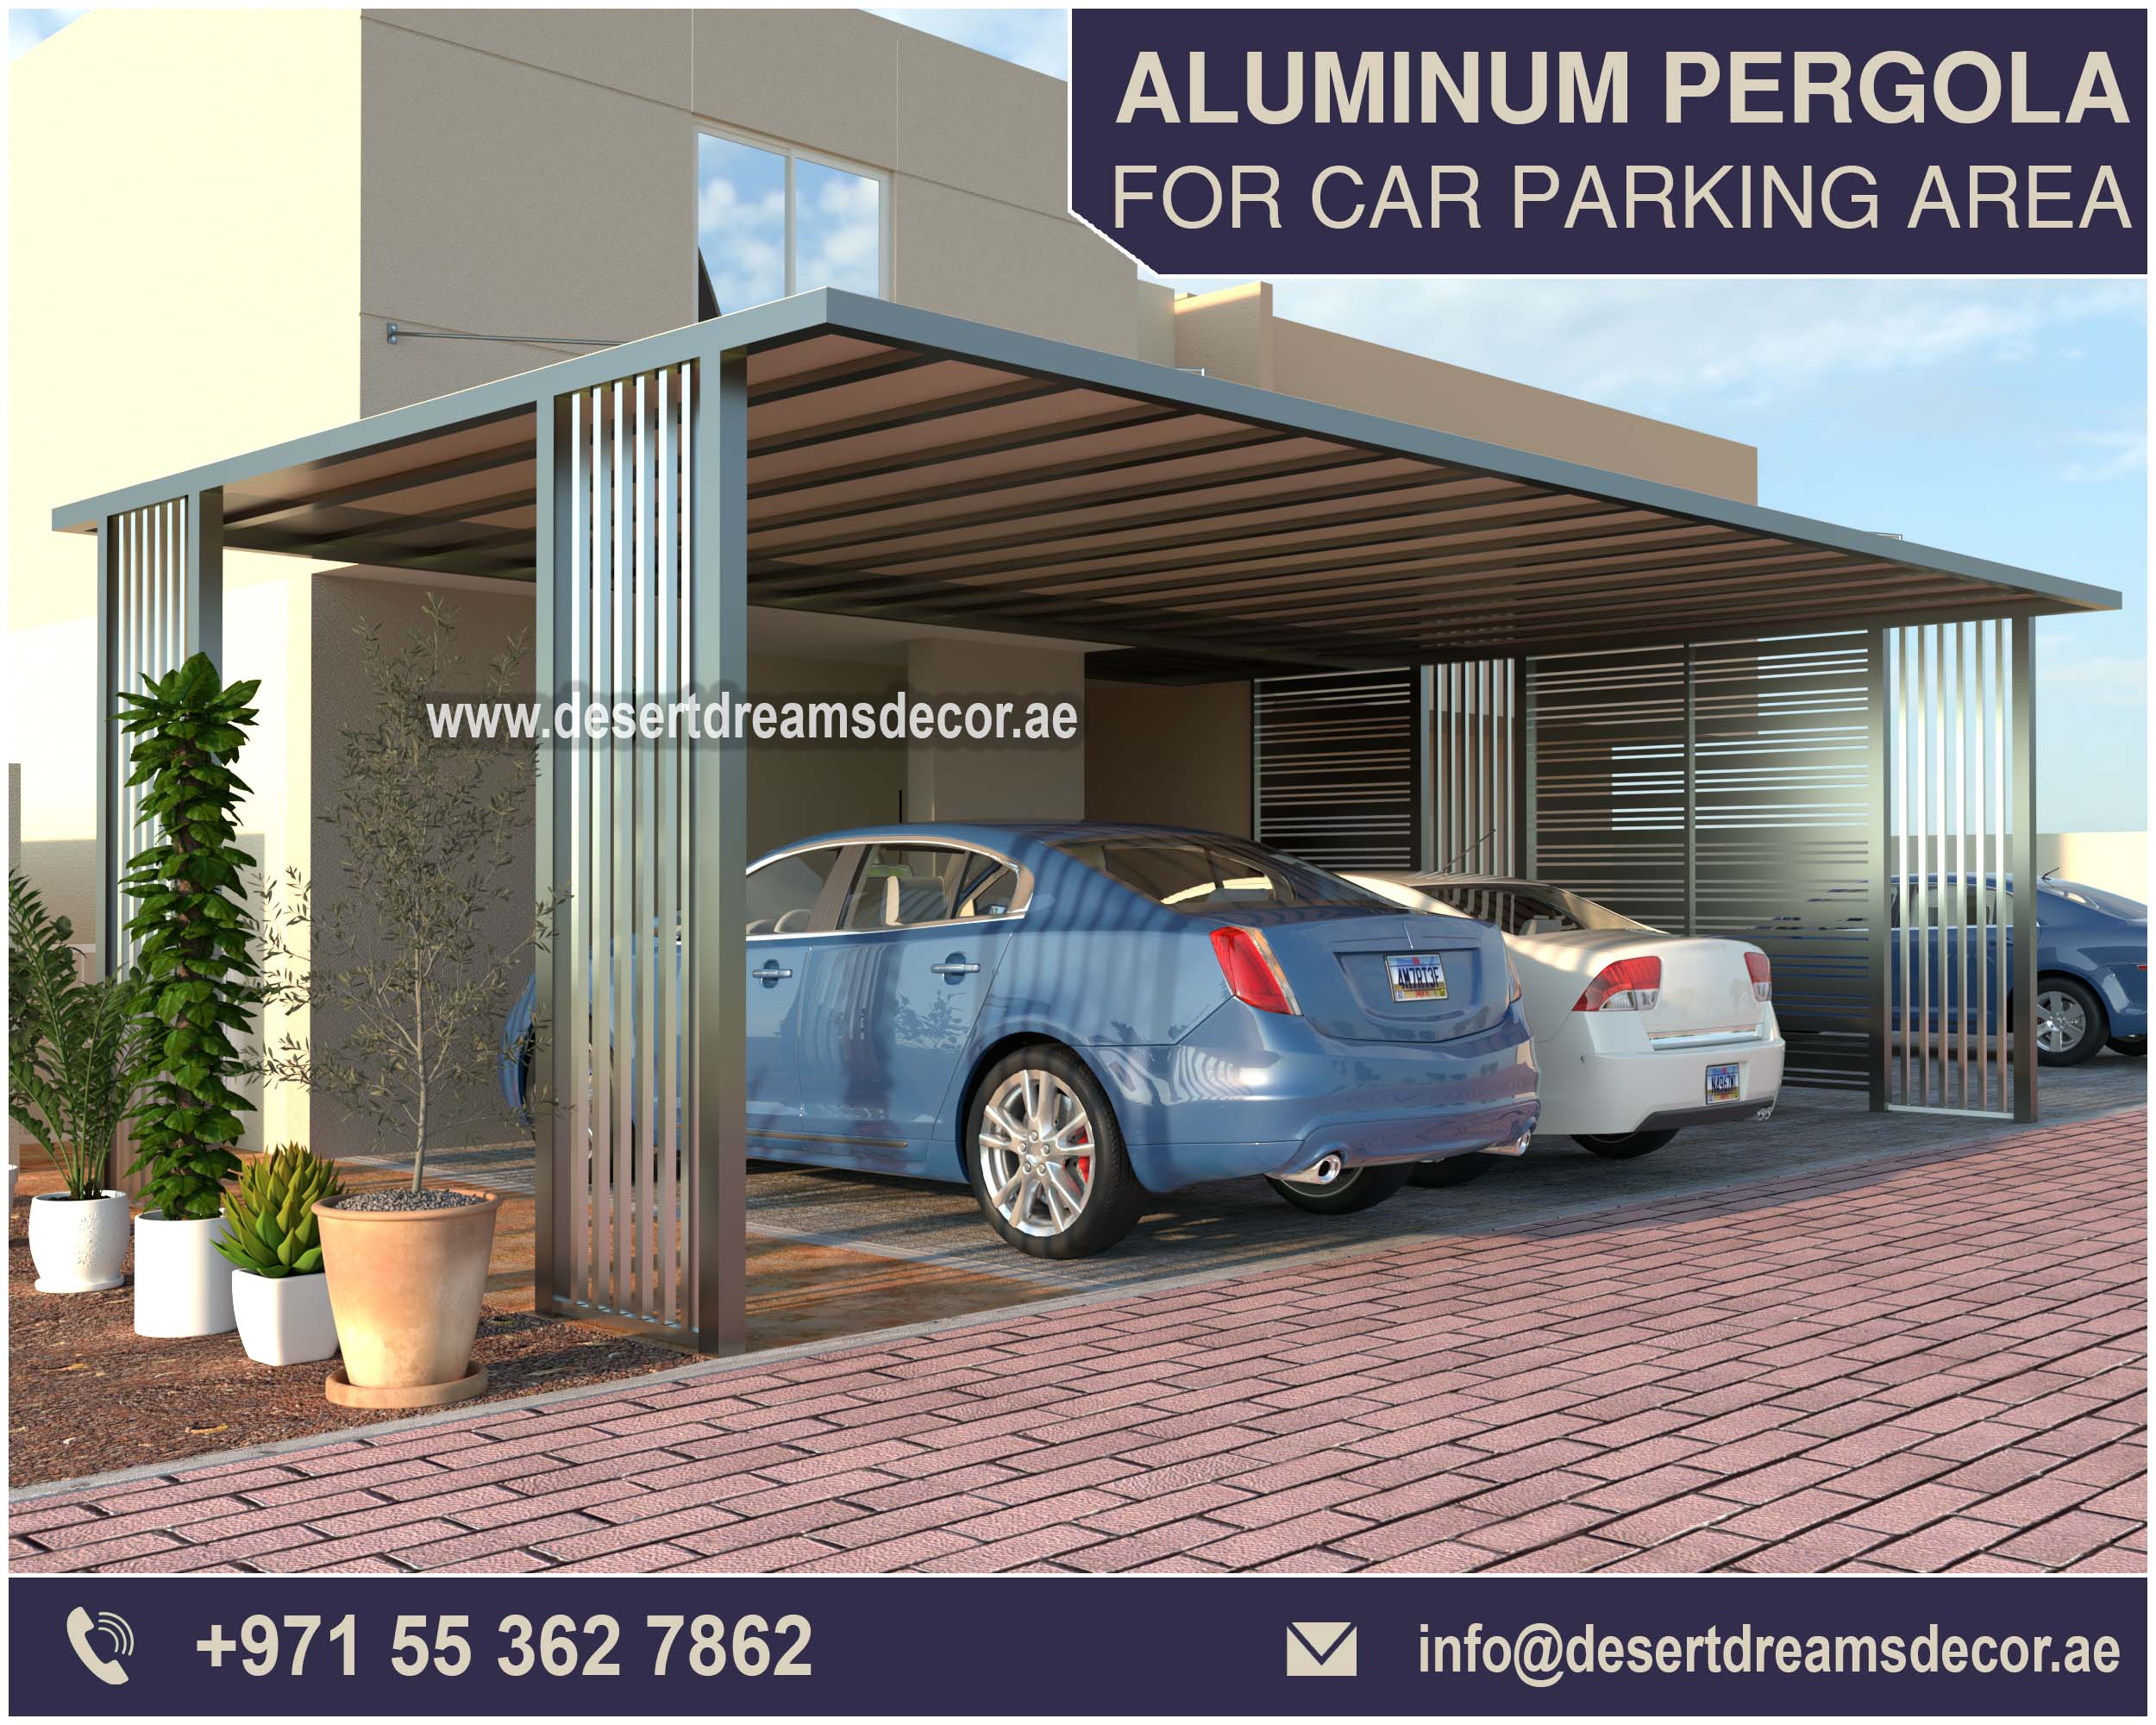 Car Parking Aluminum Pergola Suppliers in UAE.jpg